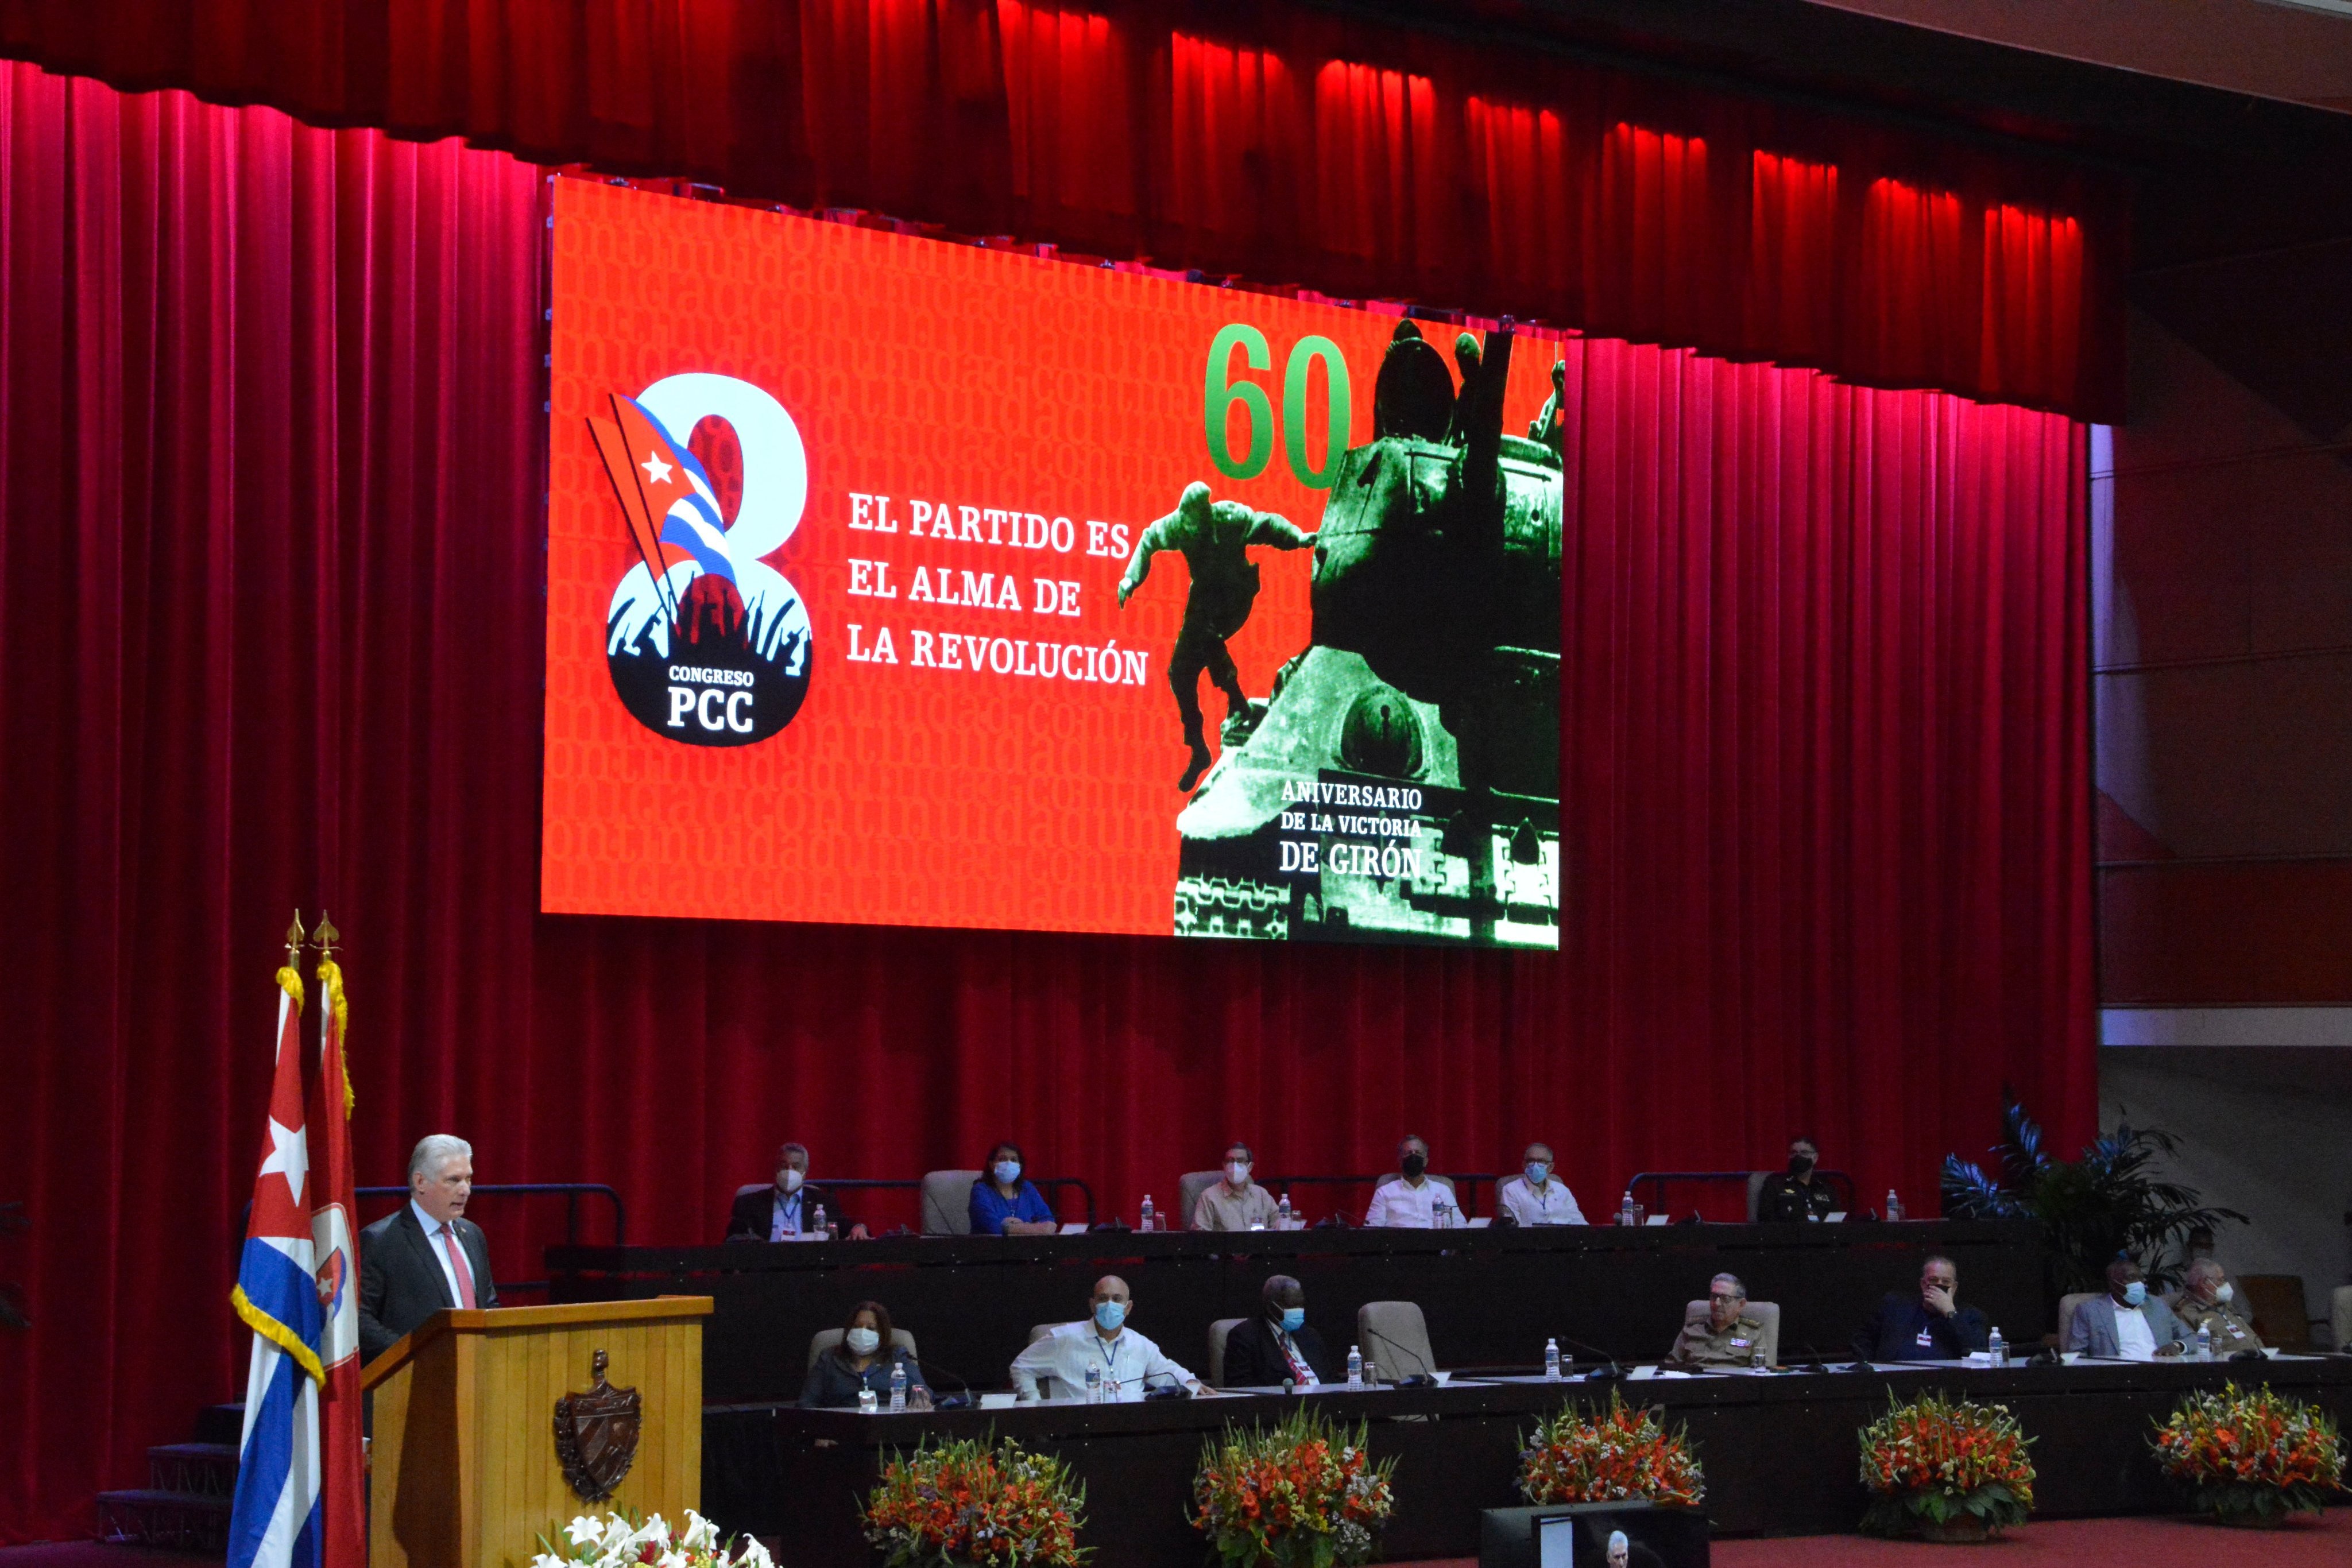 Отставка Рауля Кастро - по-настоящему историческое событие, произошедшее на состоявшемся в Гаване VIII съезде Компартии Кубы.